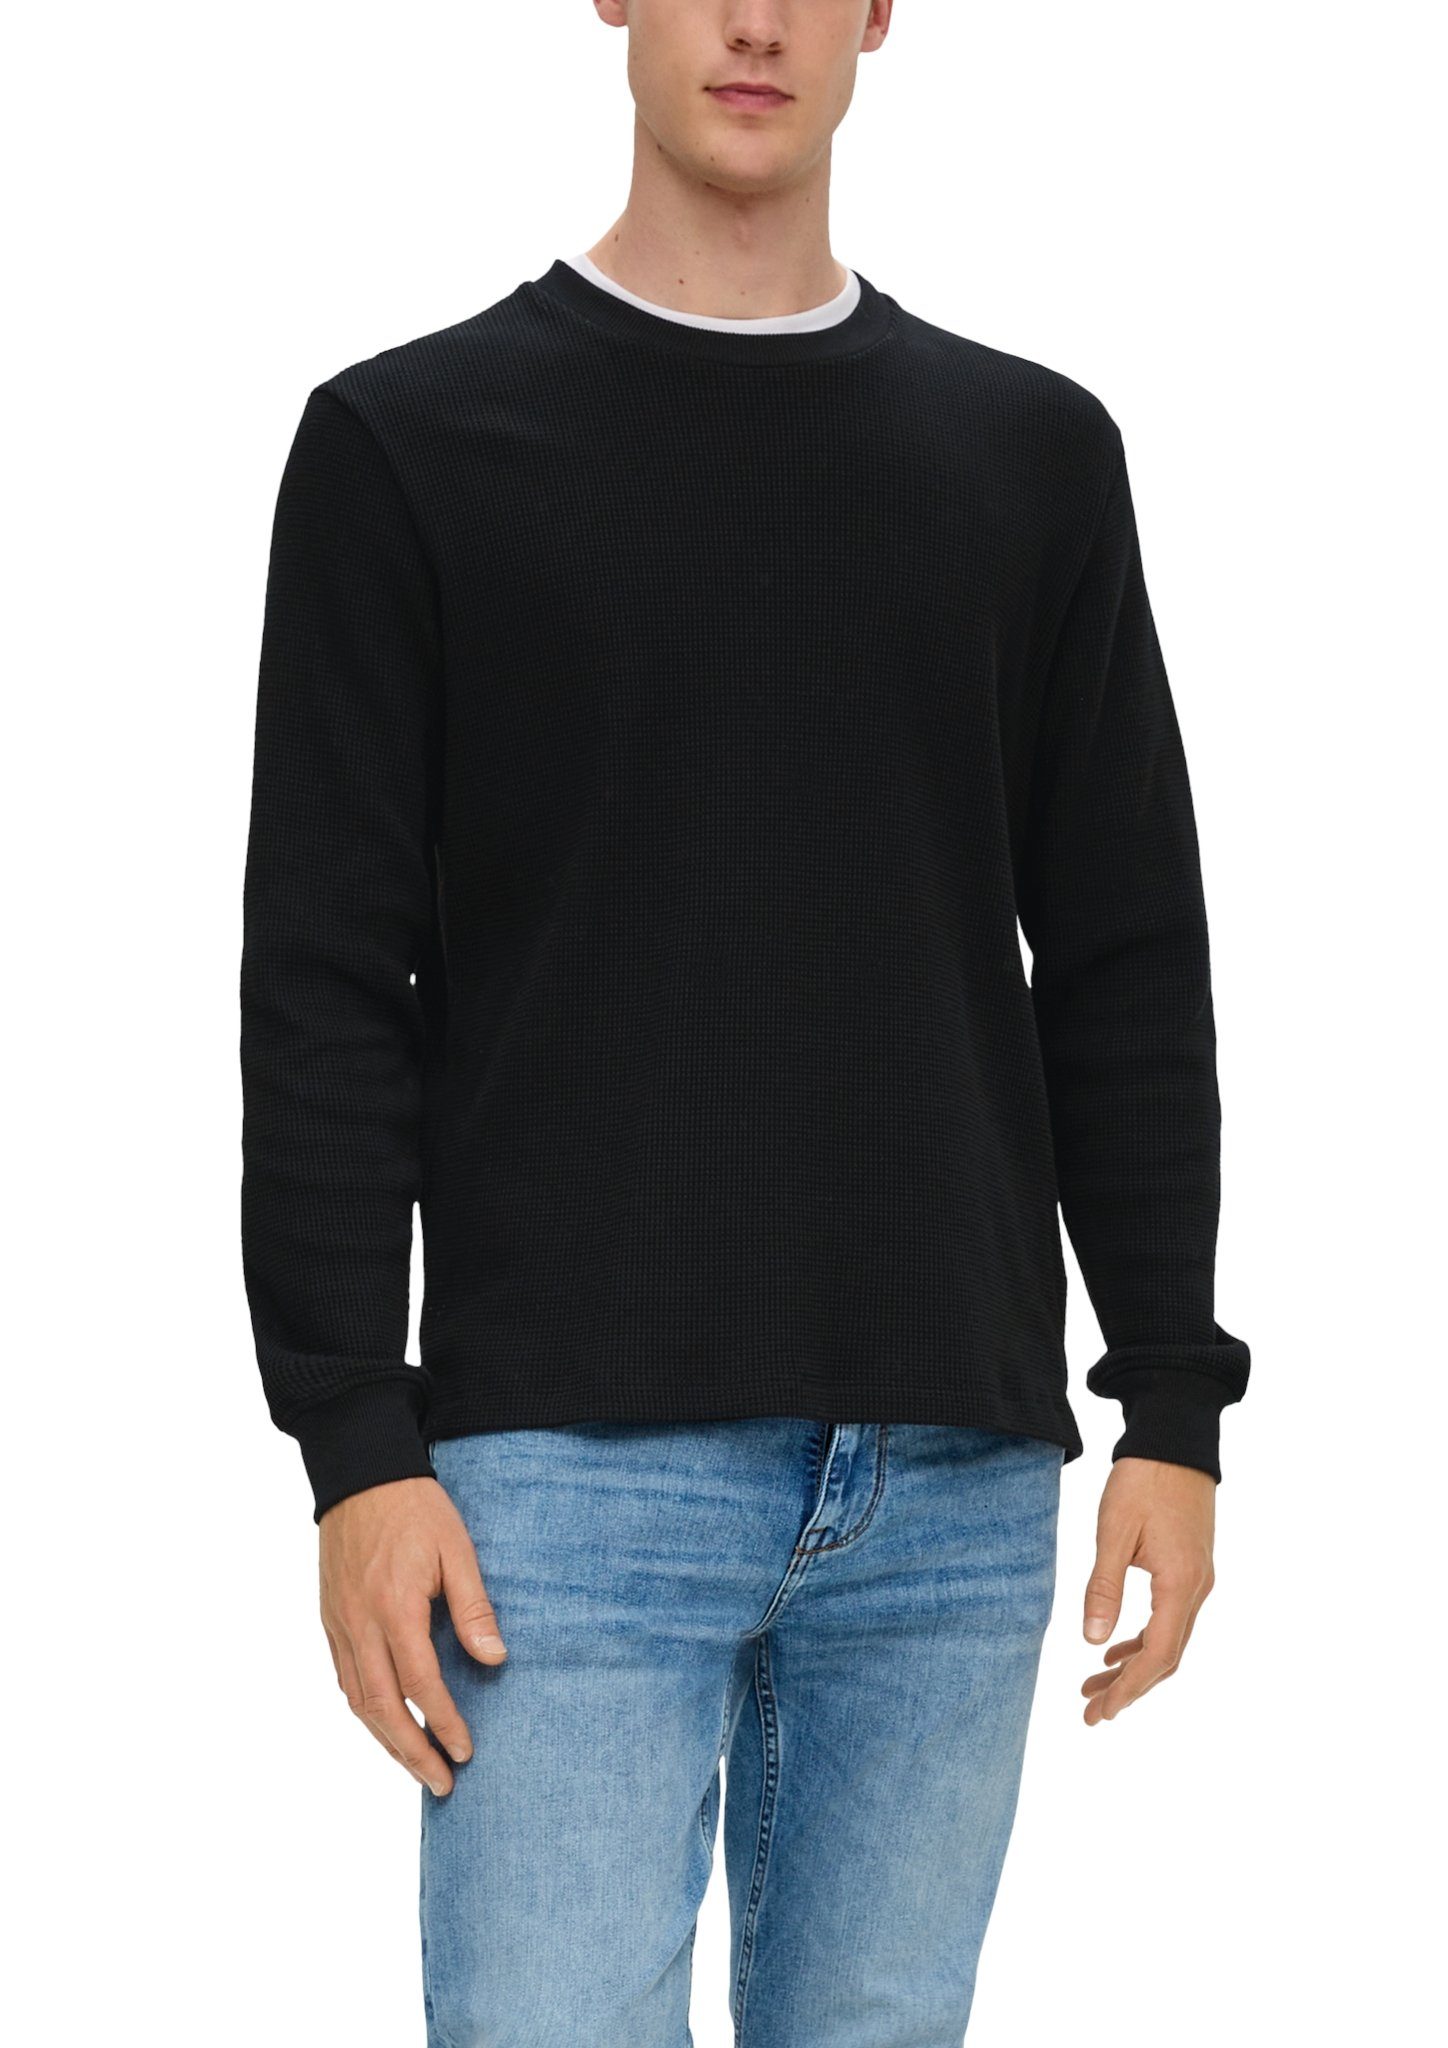 Rundhalsausschnitt black Sweatshirt mit s.Oliver